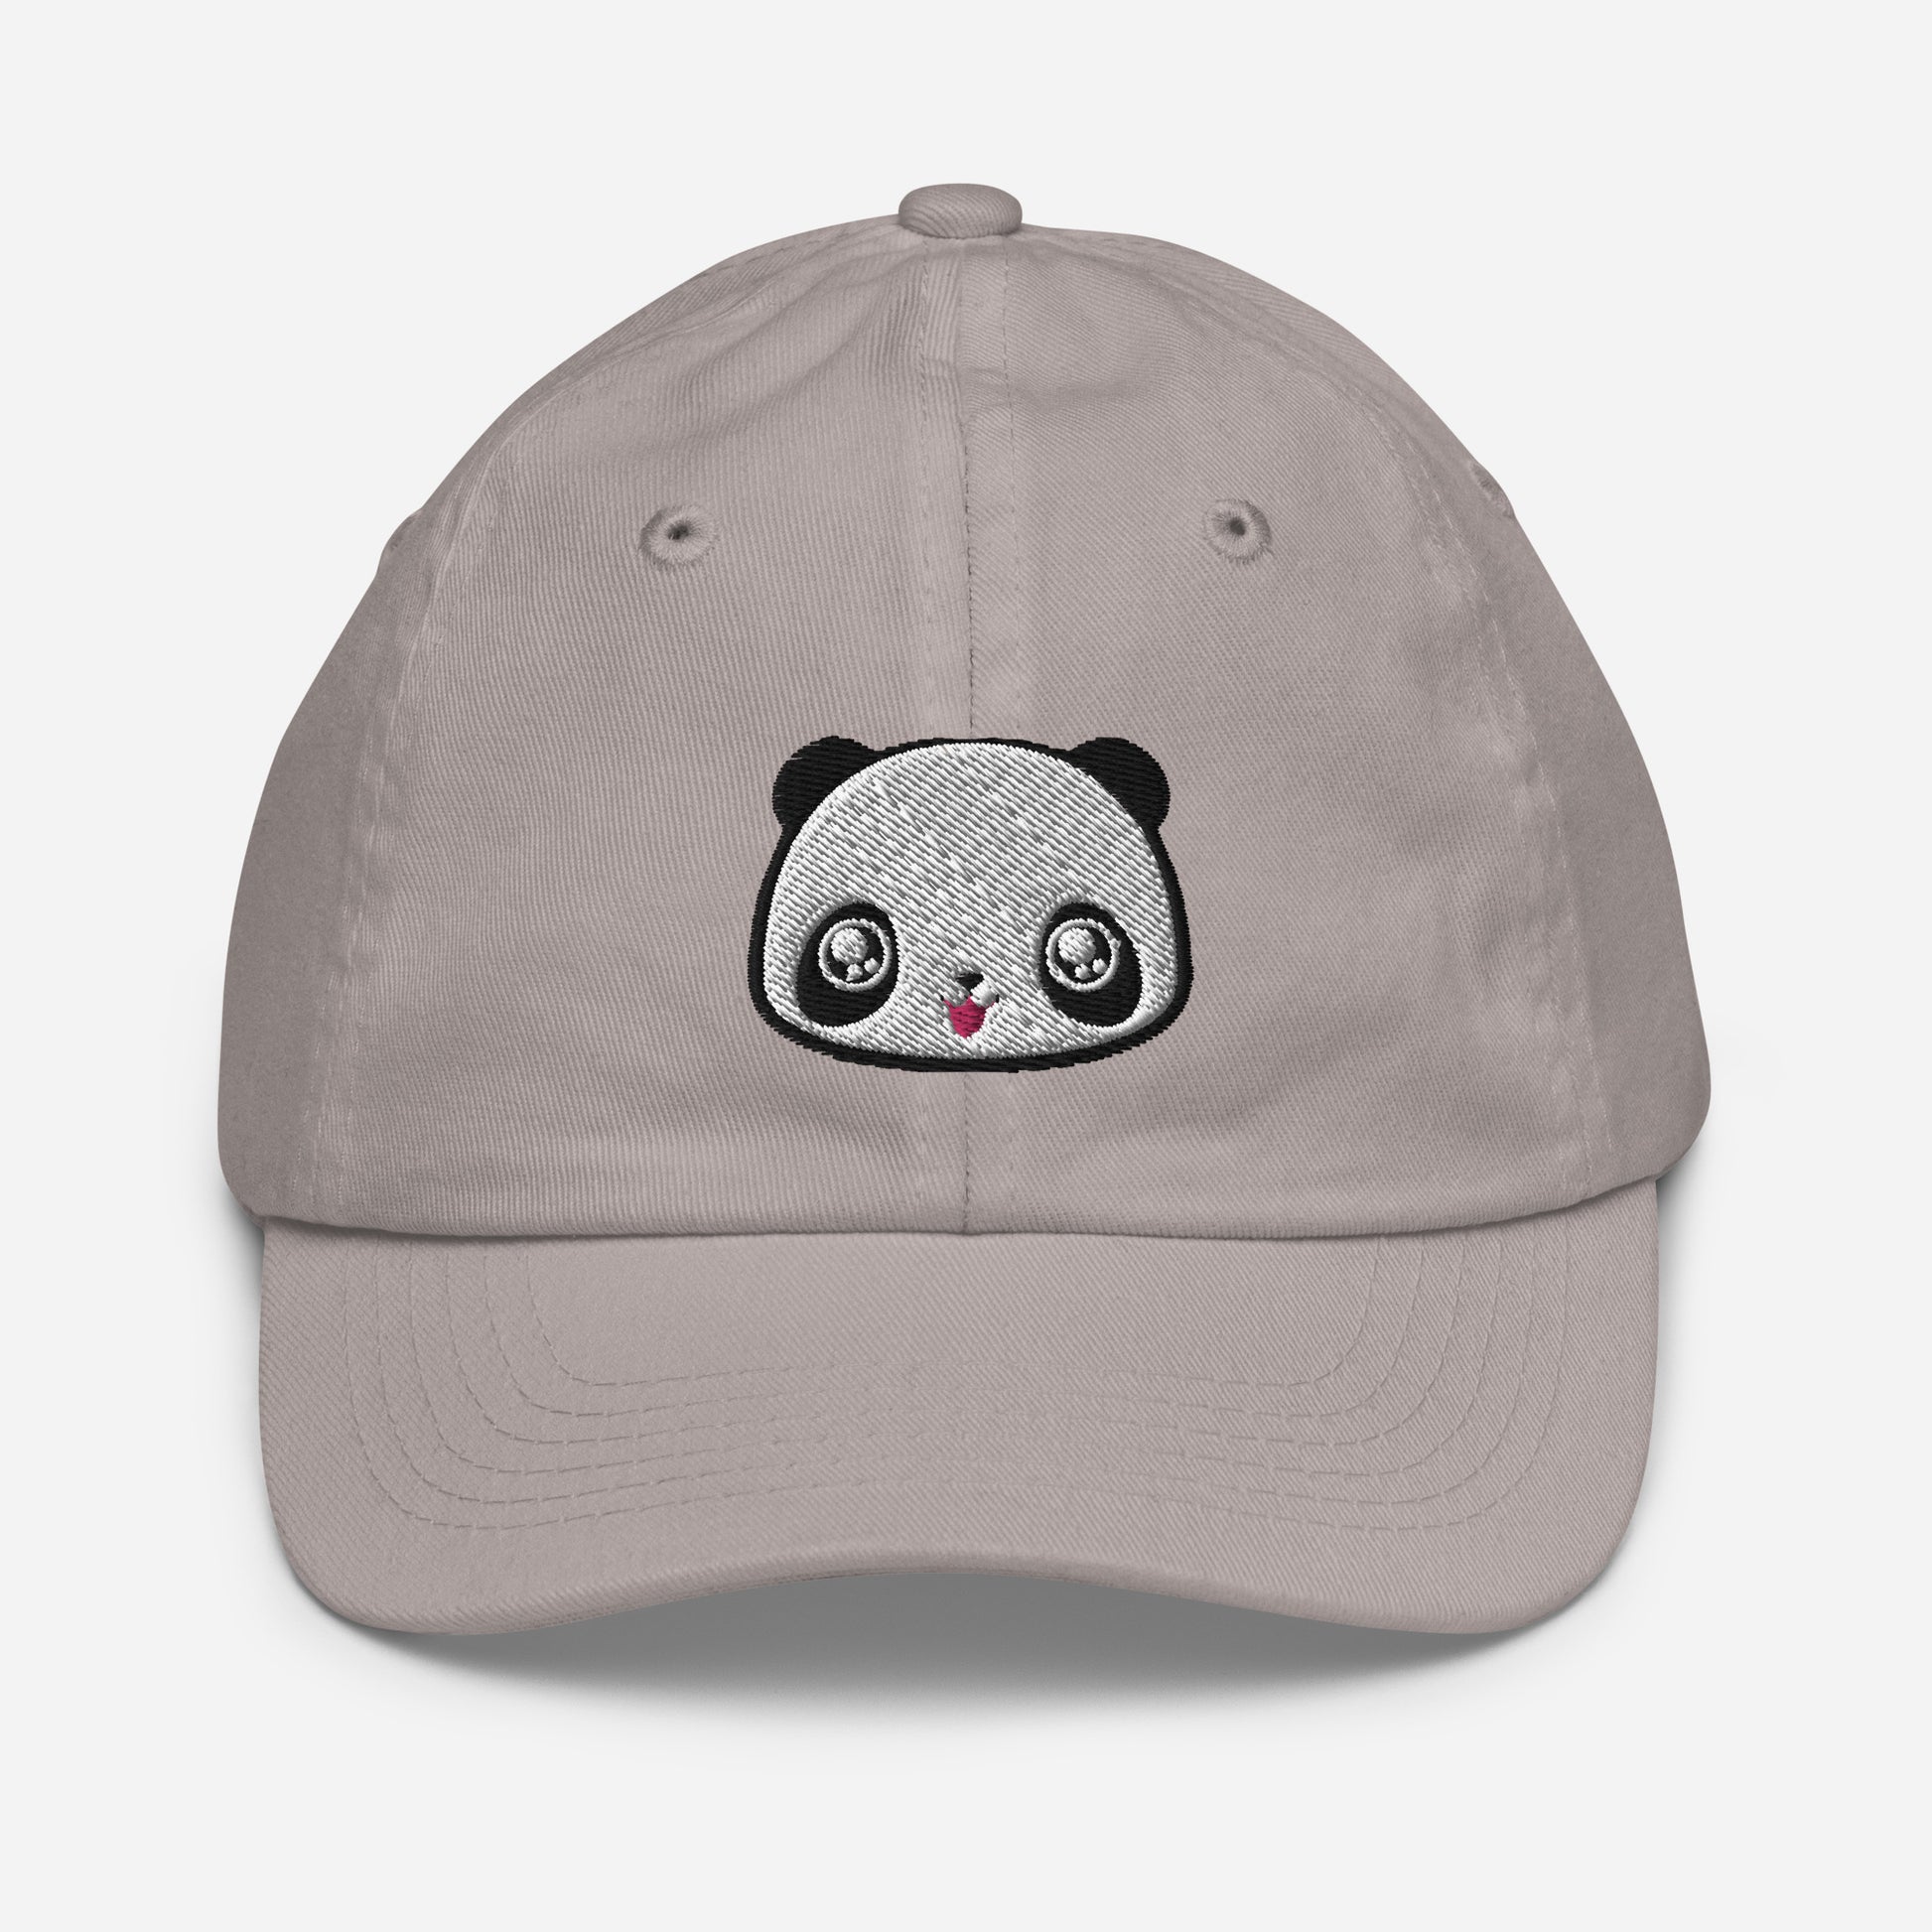 Grey baseball cap with print of panda head